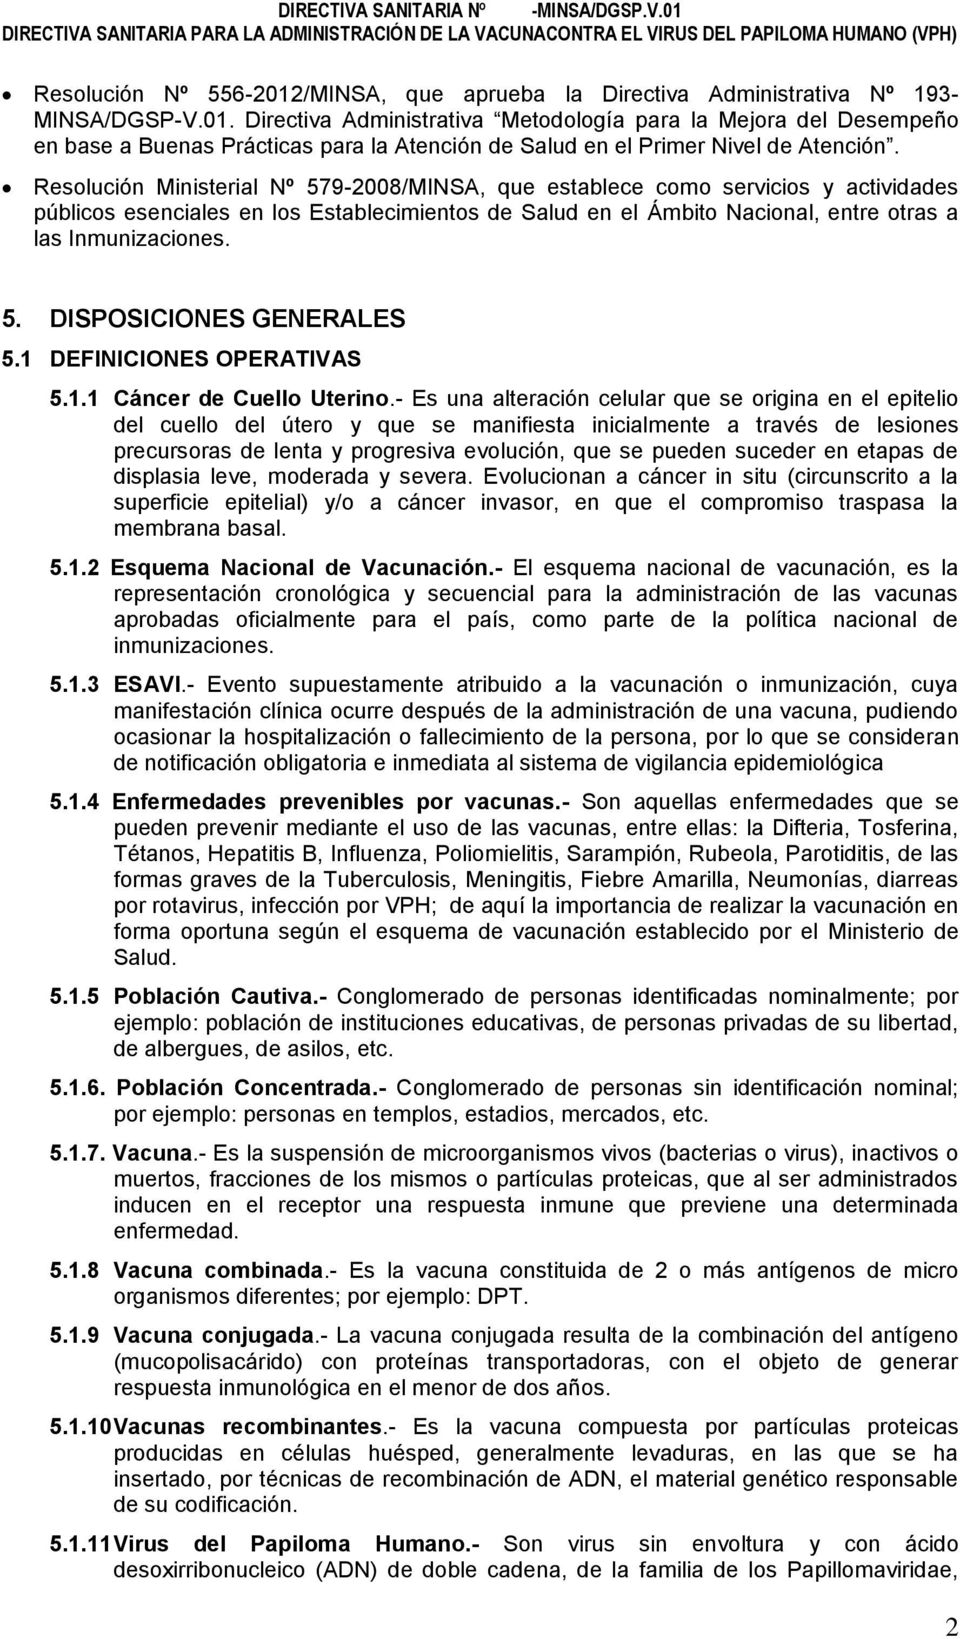 1 DEFINICIONES OPERATIVAS 5.1.1 Cáncer de Cuello Uterino.